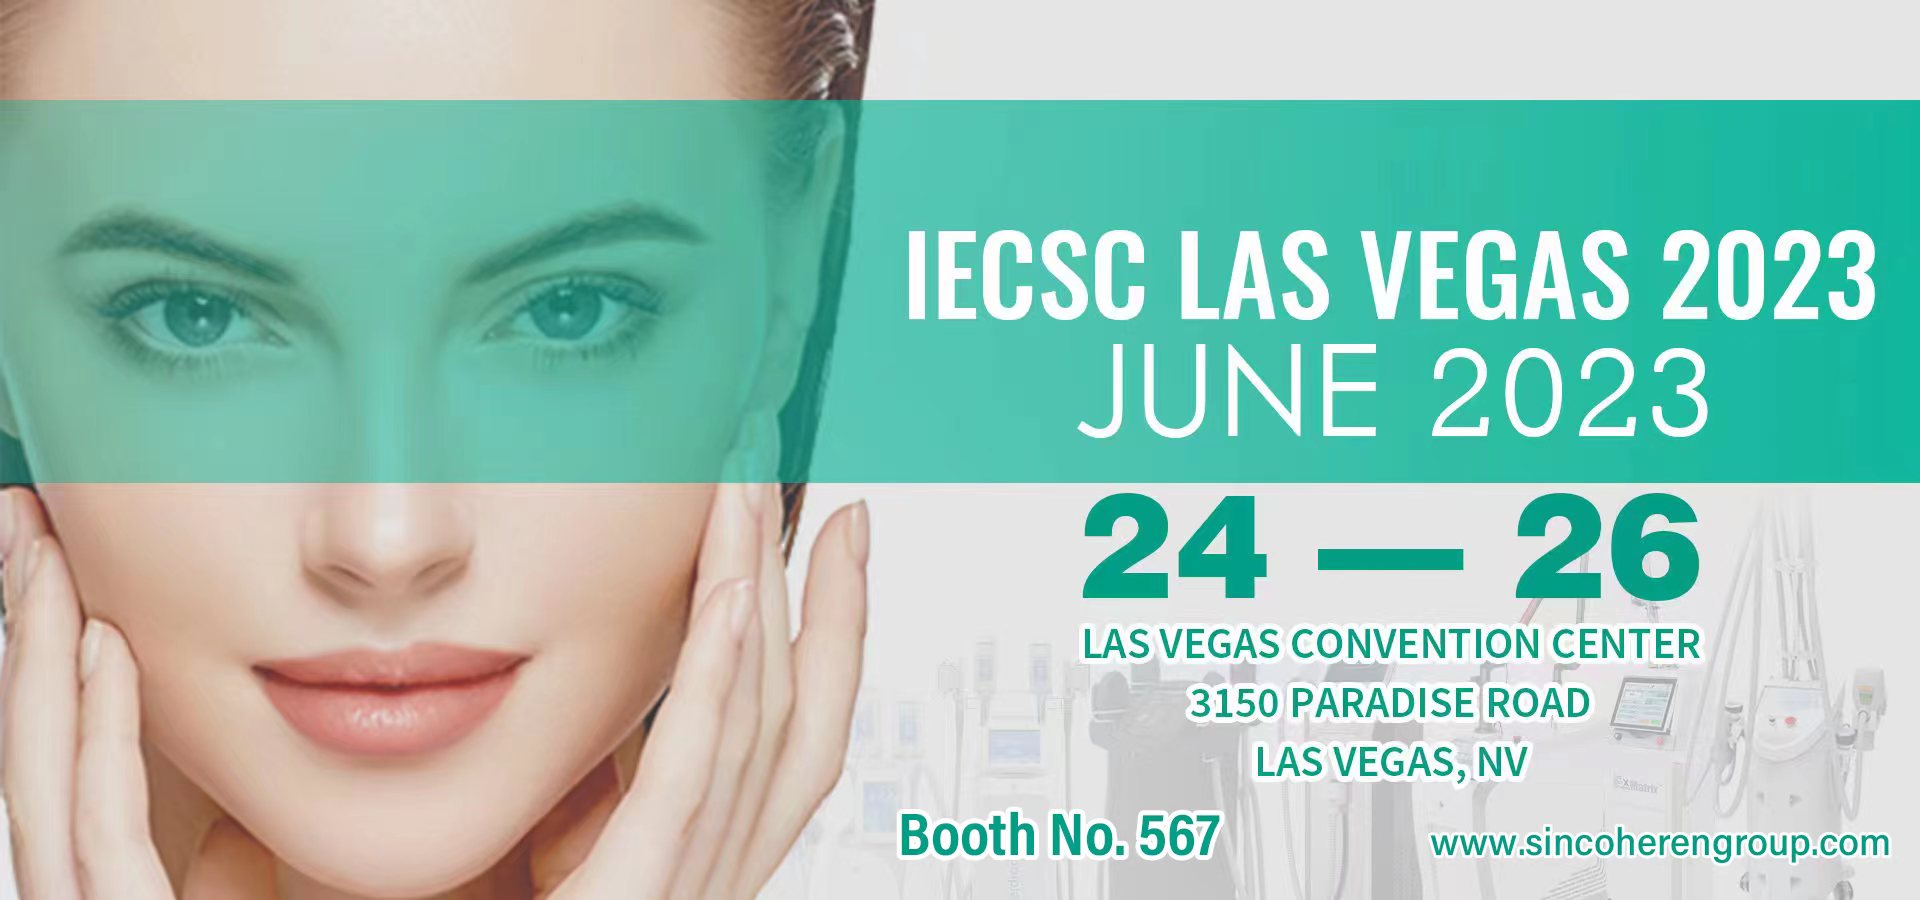 Sincoheren inviterer deg til å delta på skjønnhetsutstillingen til IECSC Las Vegas